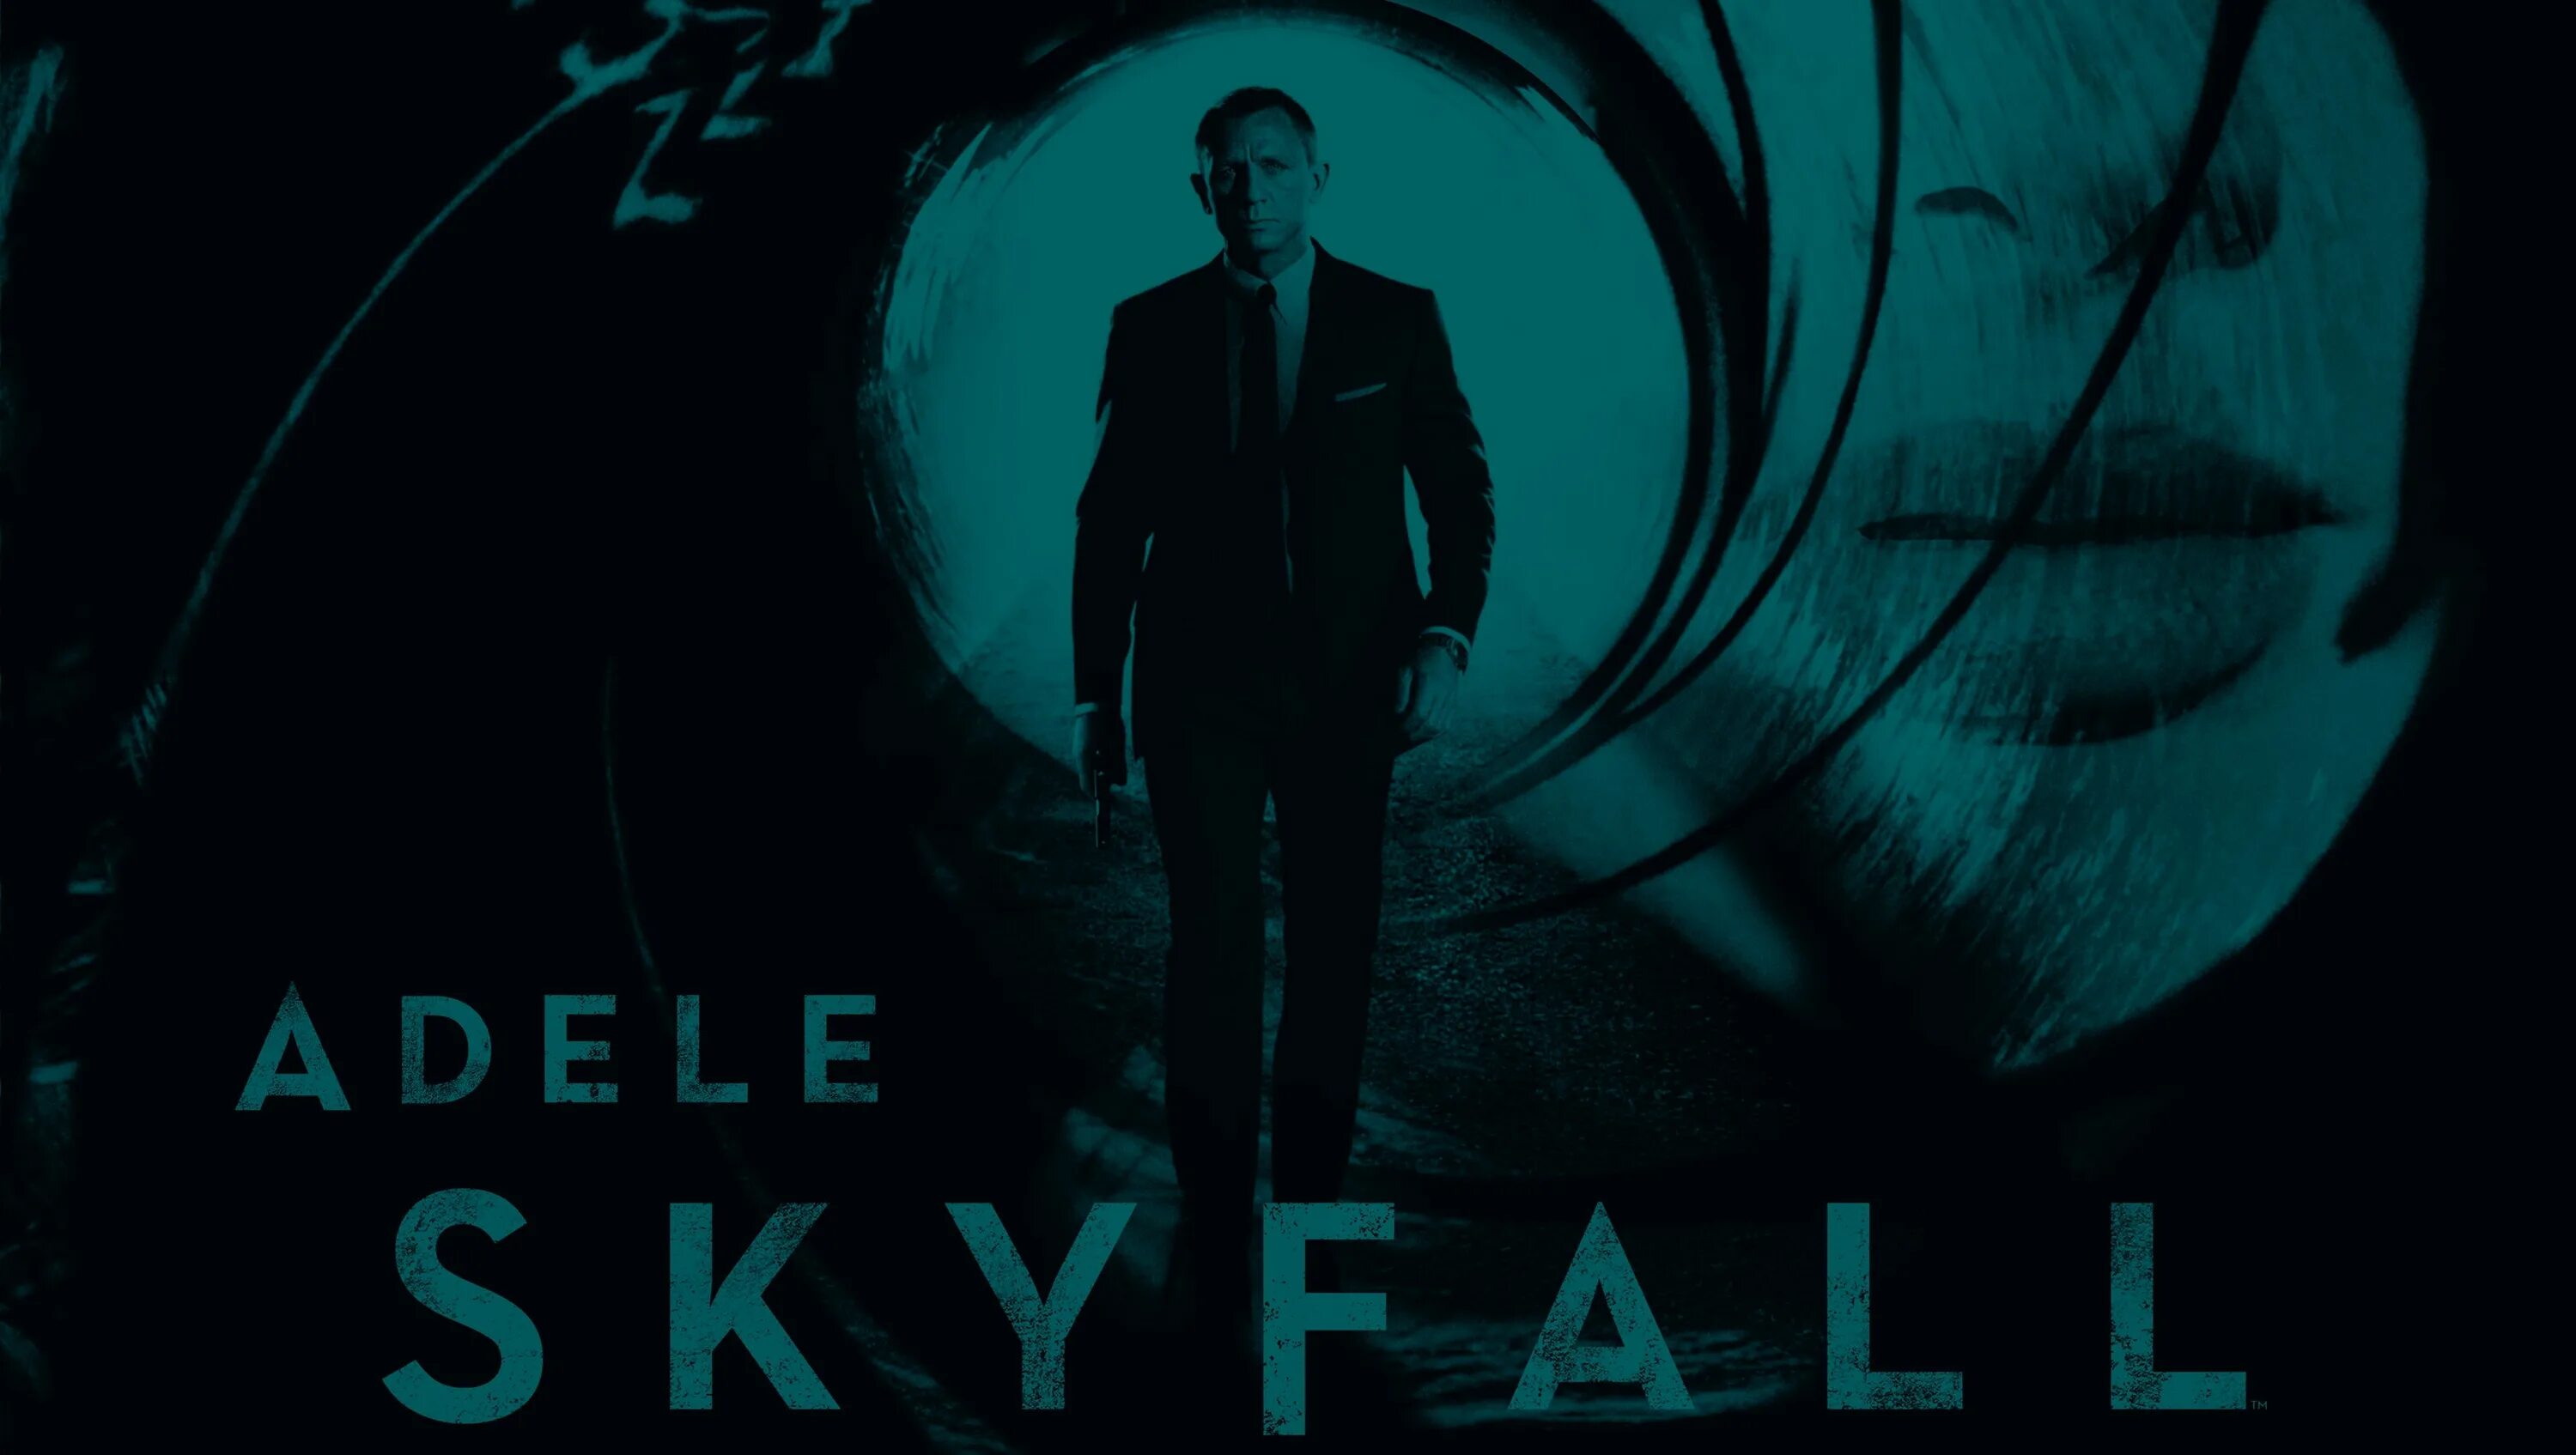 Vibe skyfall. 007: Координаты Скайфолл. 007 Skyfall обложка.